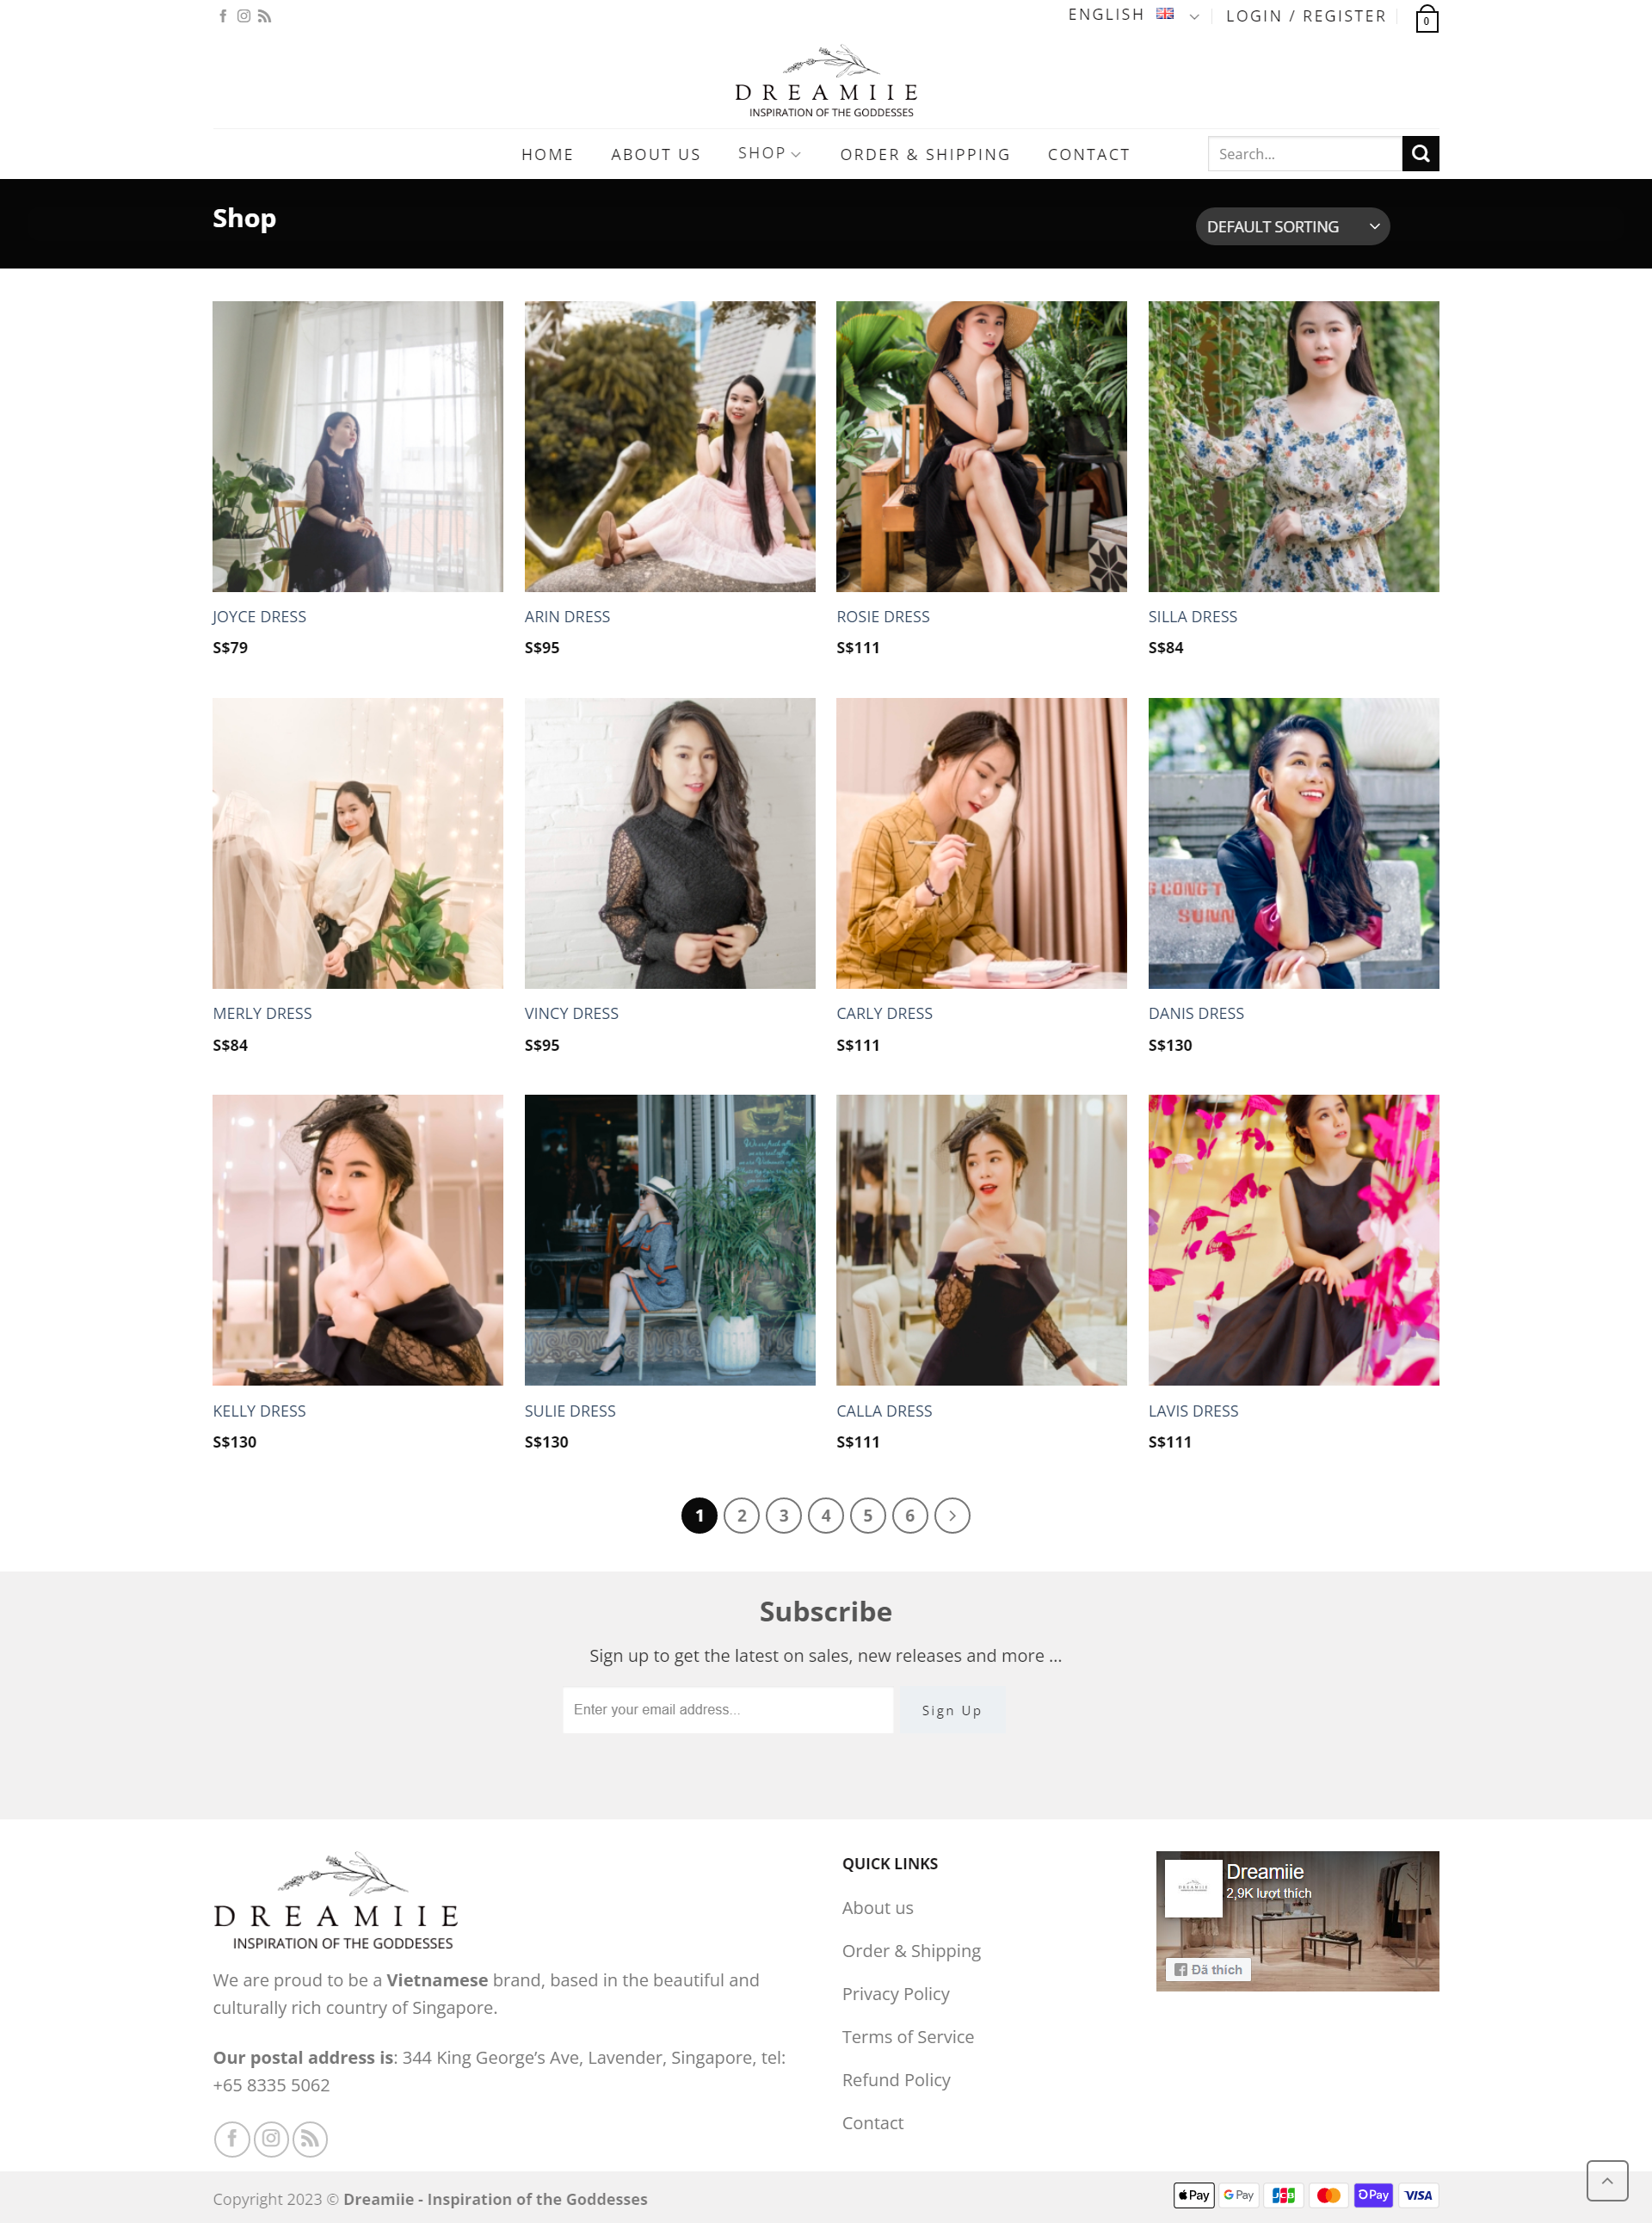 mẫu website đa ngôn ngữ đơn giản về shop thời trang dreamiie